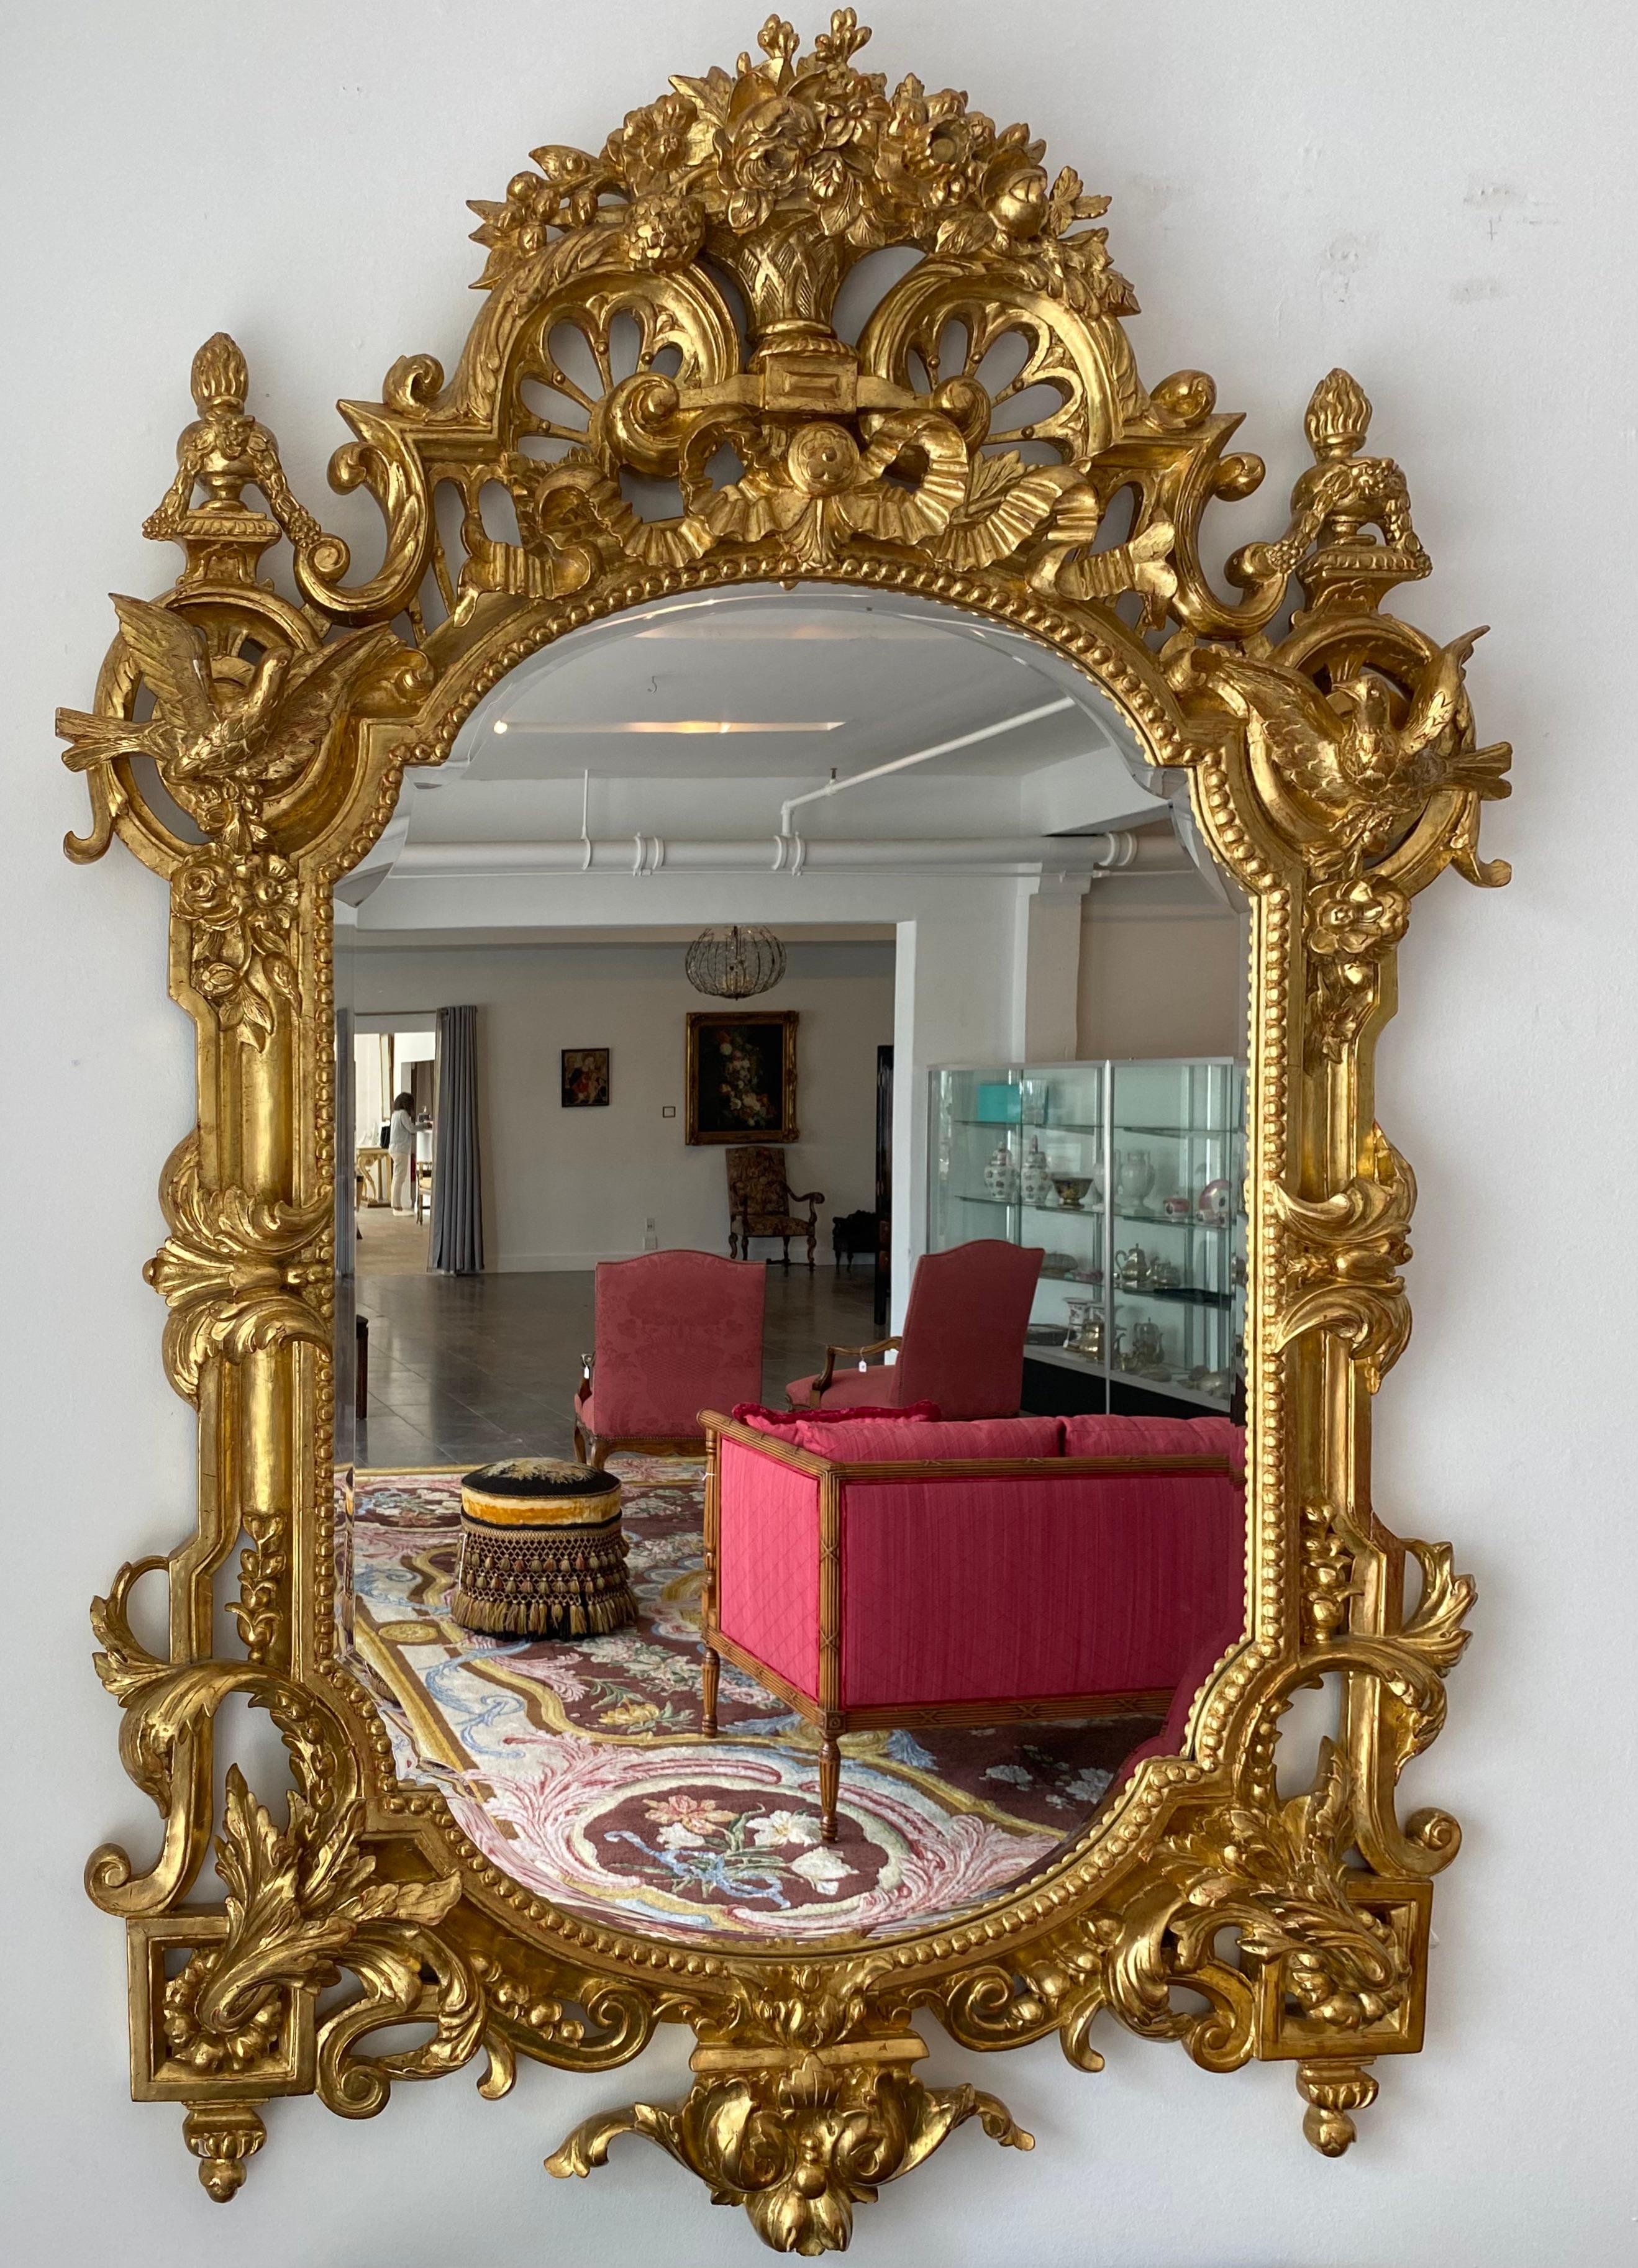 Un beau et très généreux miroir en bois doré de la Régence française, avec des vases, des oiseaux et d'extraordinaires éléments sculptés à la main.

Miroir en bois doré de la Régence française du début du 20e siècle, rappelant les consoles ou